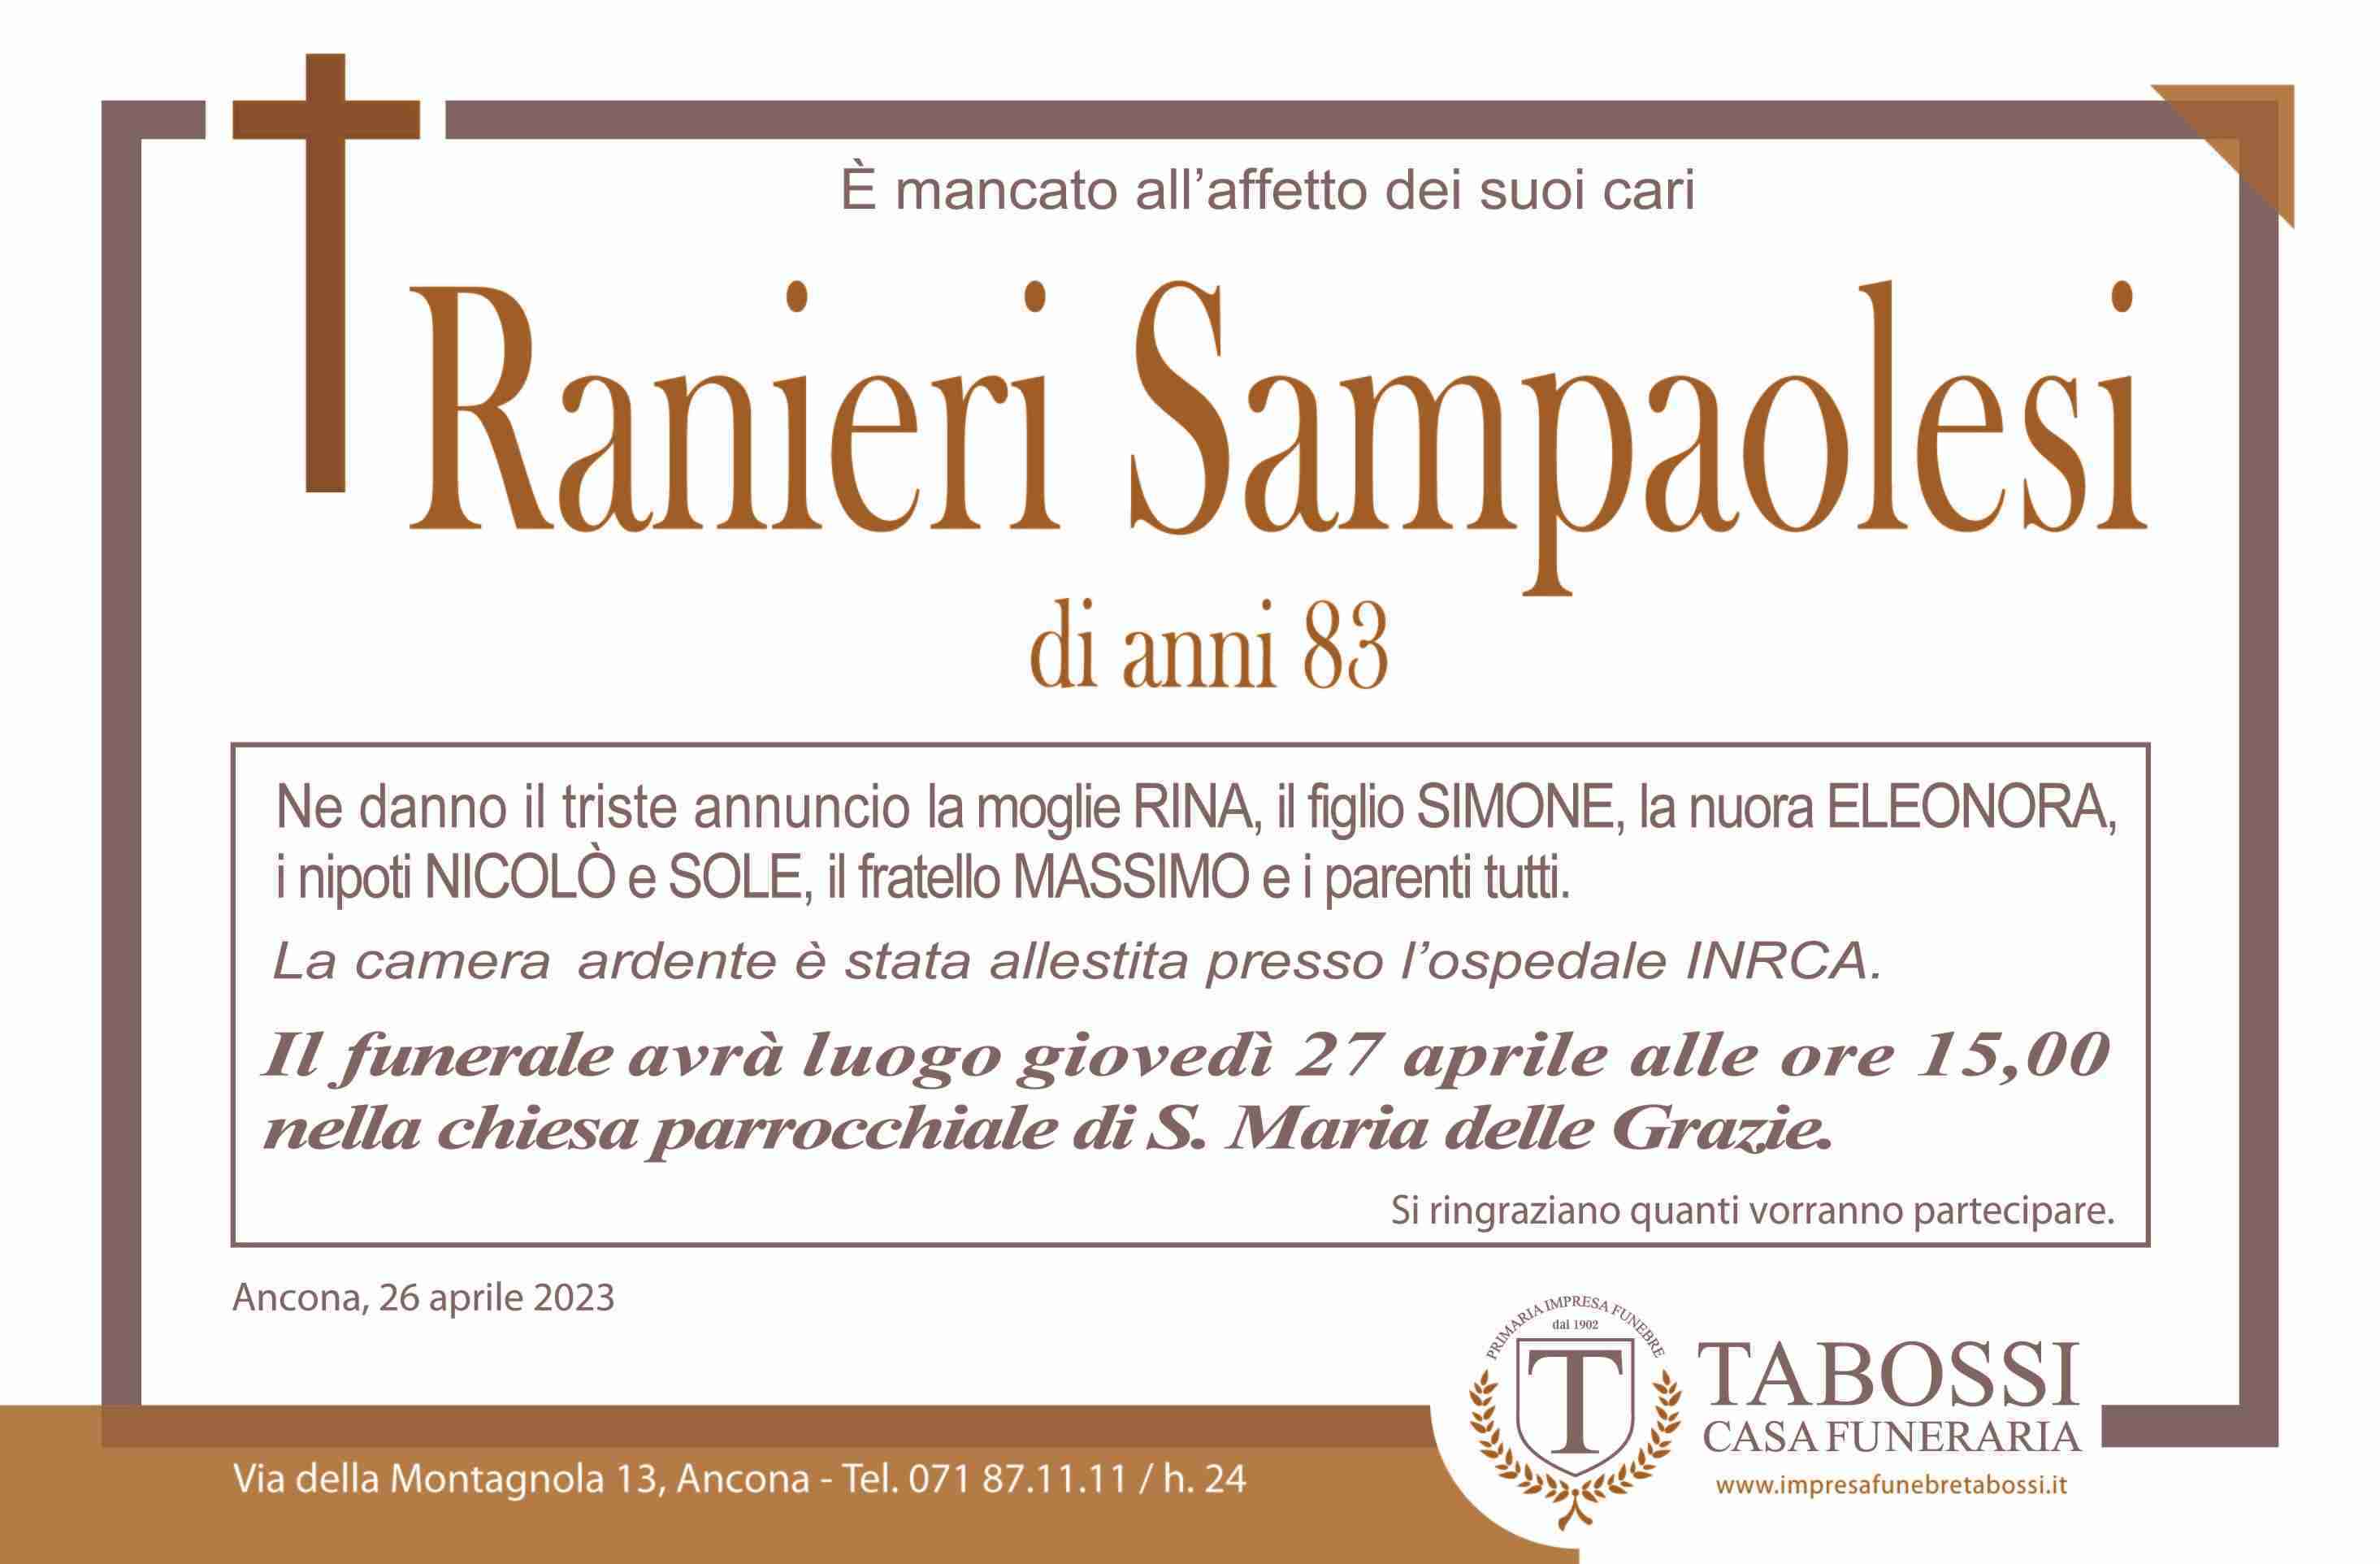 Ranieri Sampaolesi